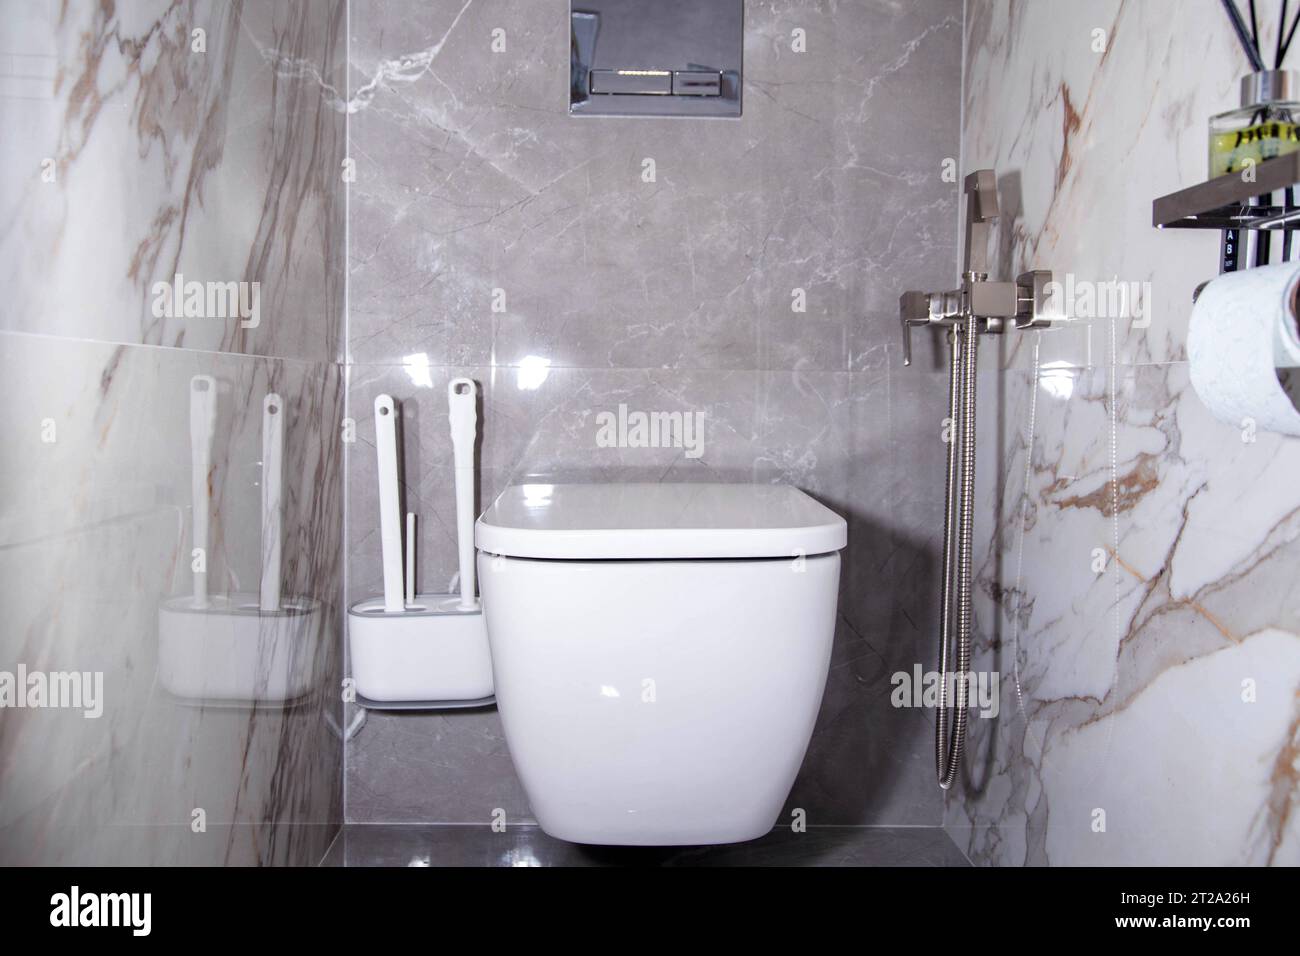 Salle de bain moderne avec toilettes suspendues au mur et carreaux de grès cérame gris. Douche hygiénique sur le mur Banque D'Images